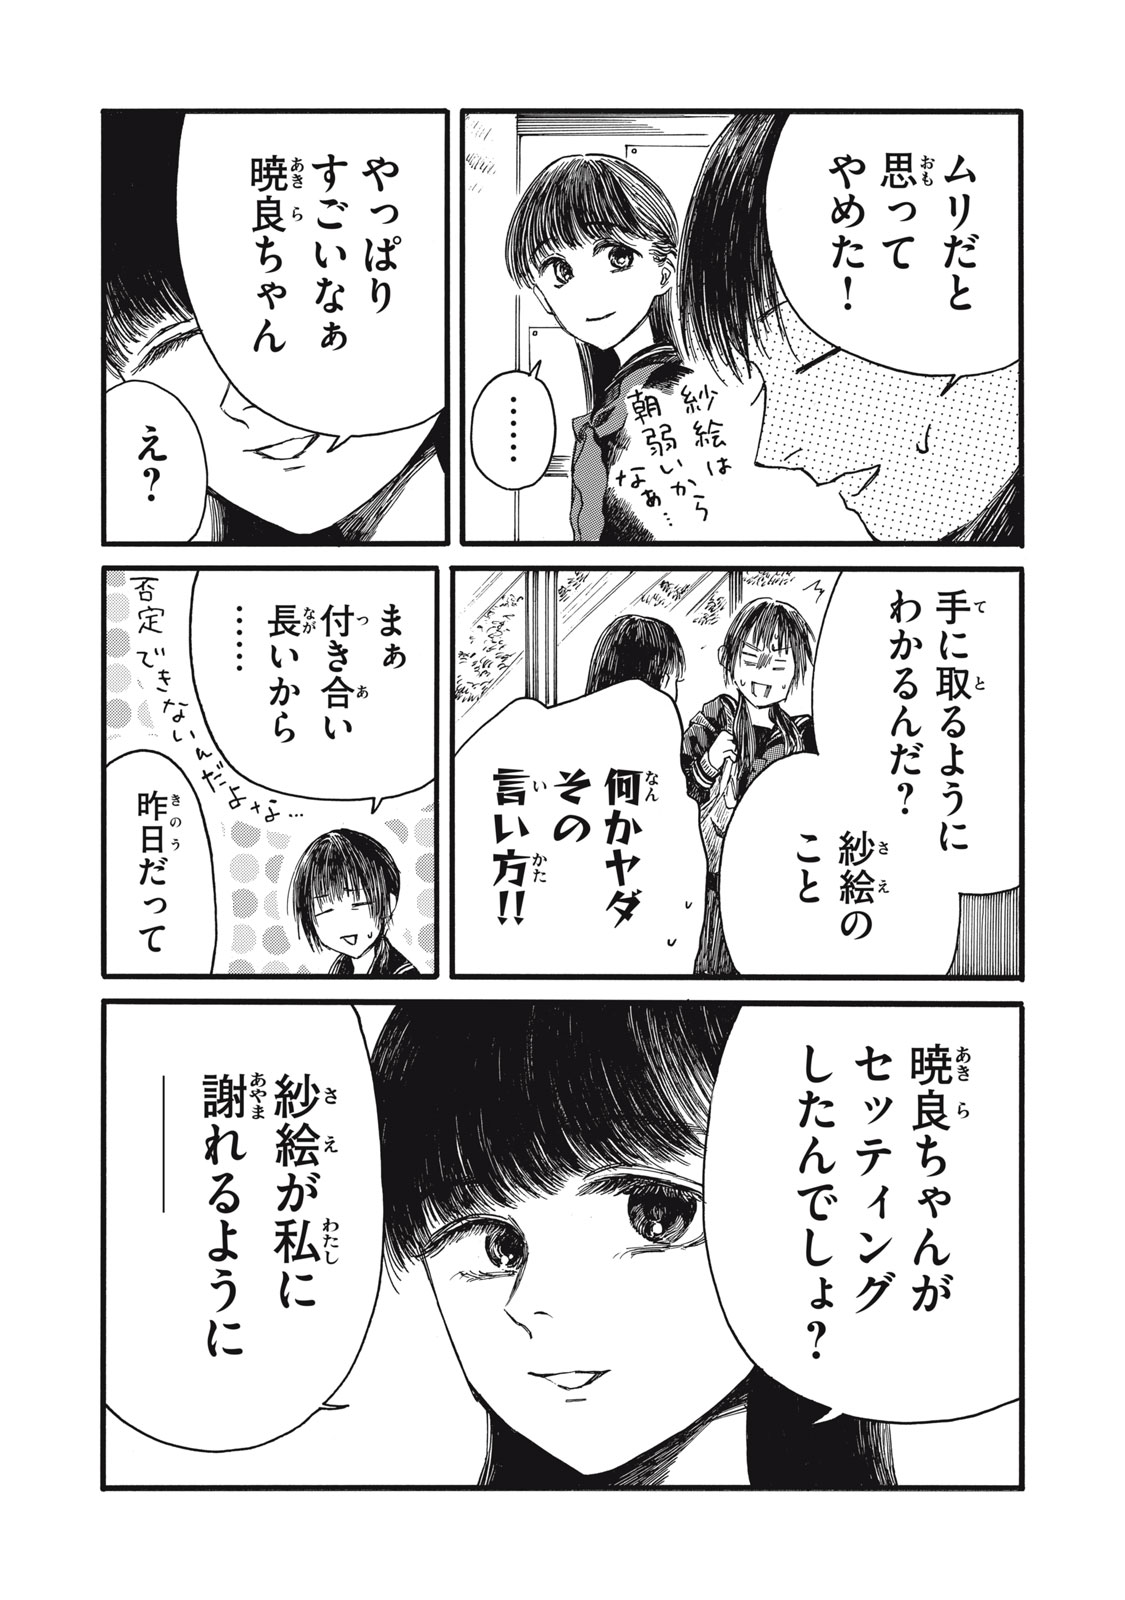 Watashi no Hara no Naka no Bakemono - Chapter 34 - Page 7